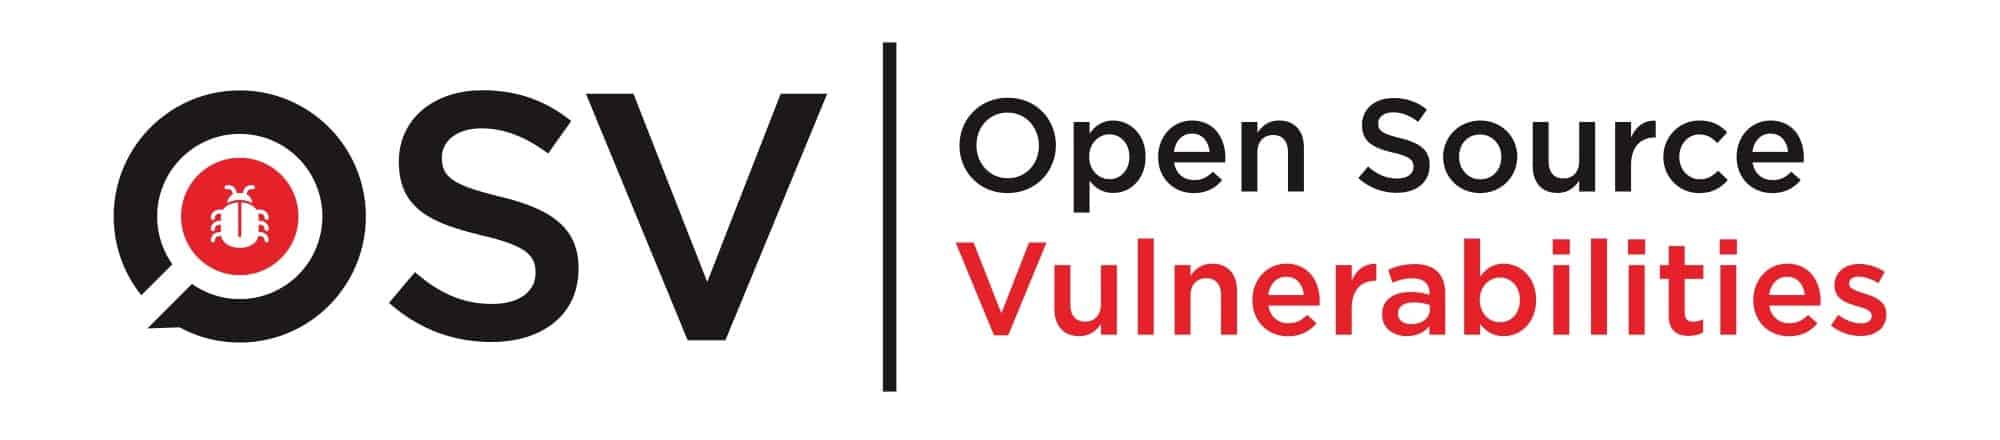 Google apresenta um banco de dados para rastrear vulnerabilidades de código aberto com facilidade